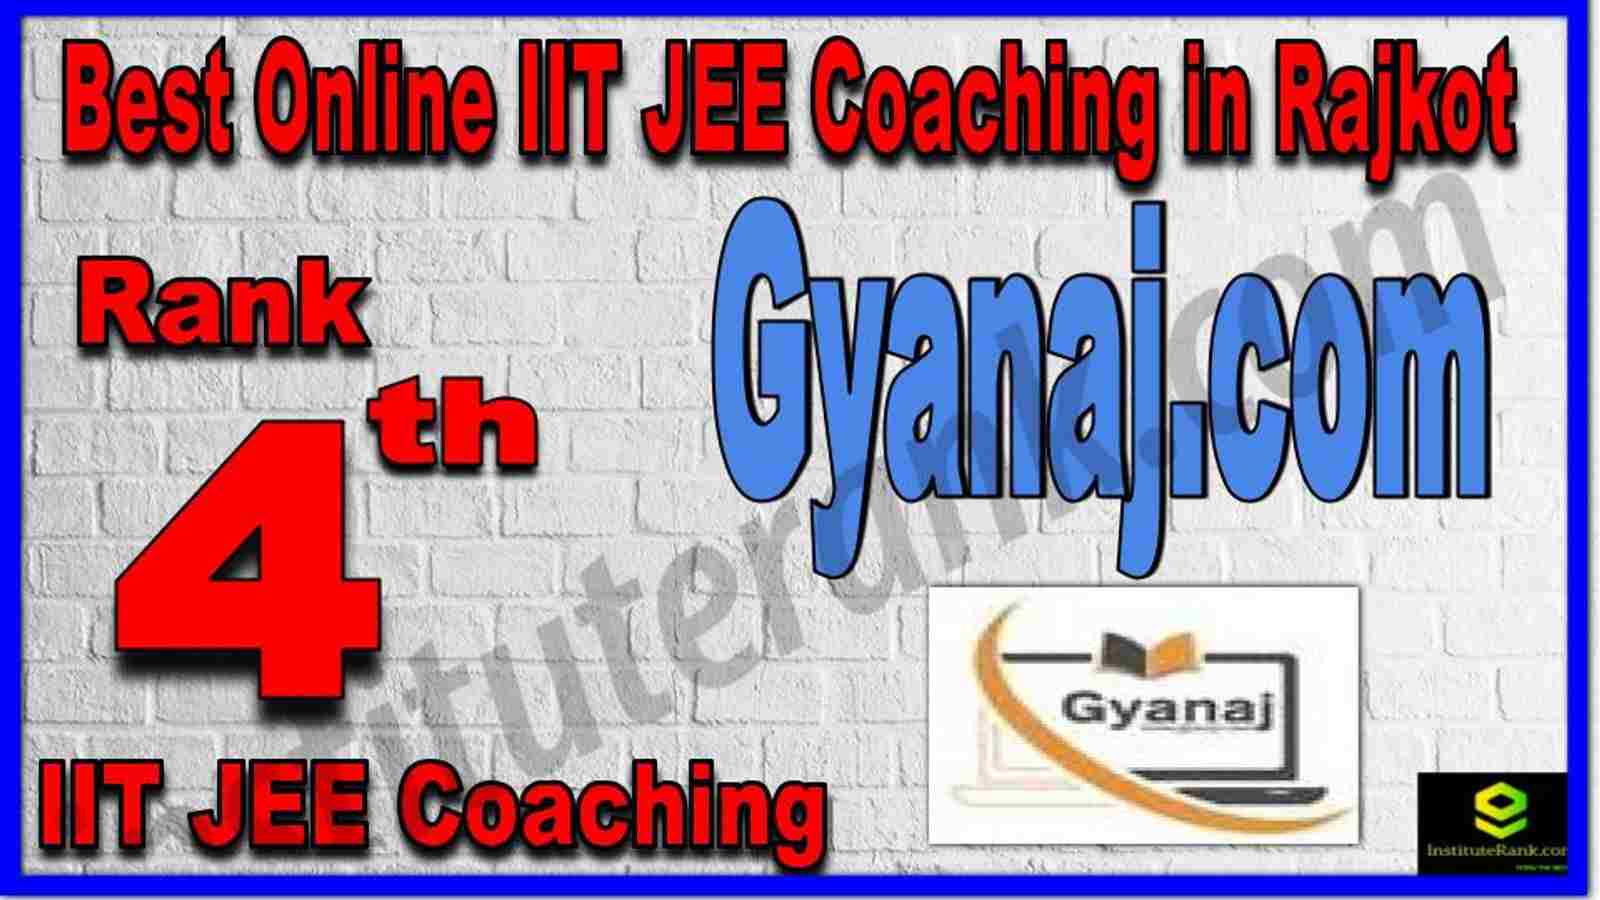 Rank 4th Best Online IIT JEE Coaching in Rajkot